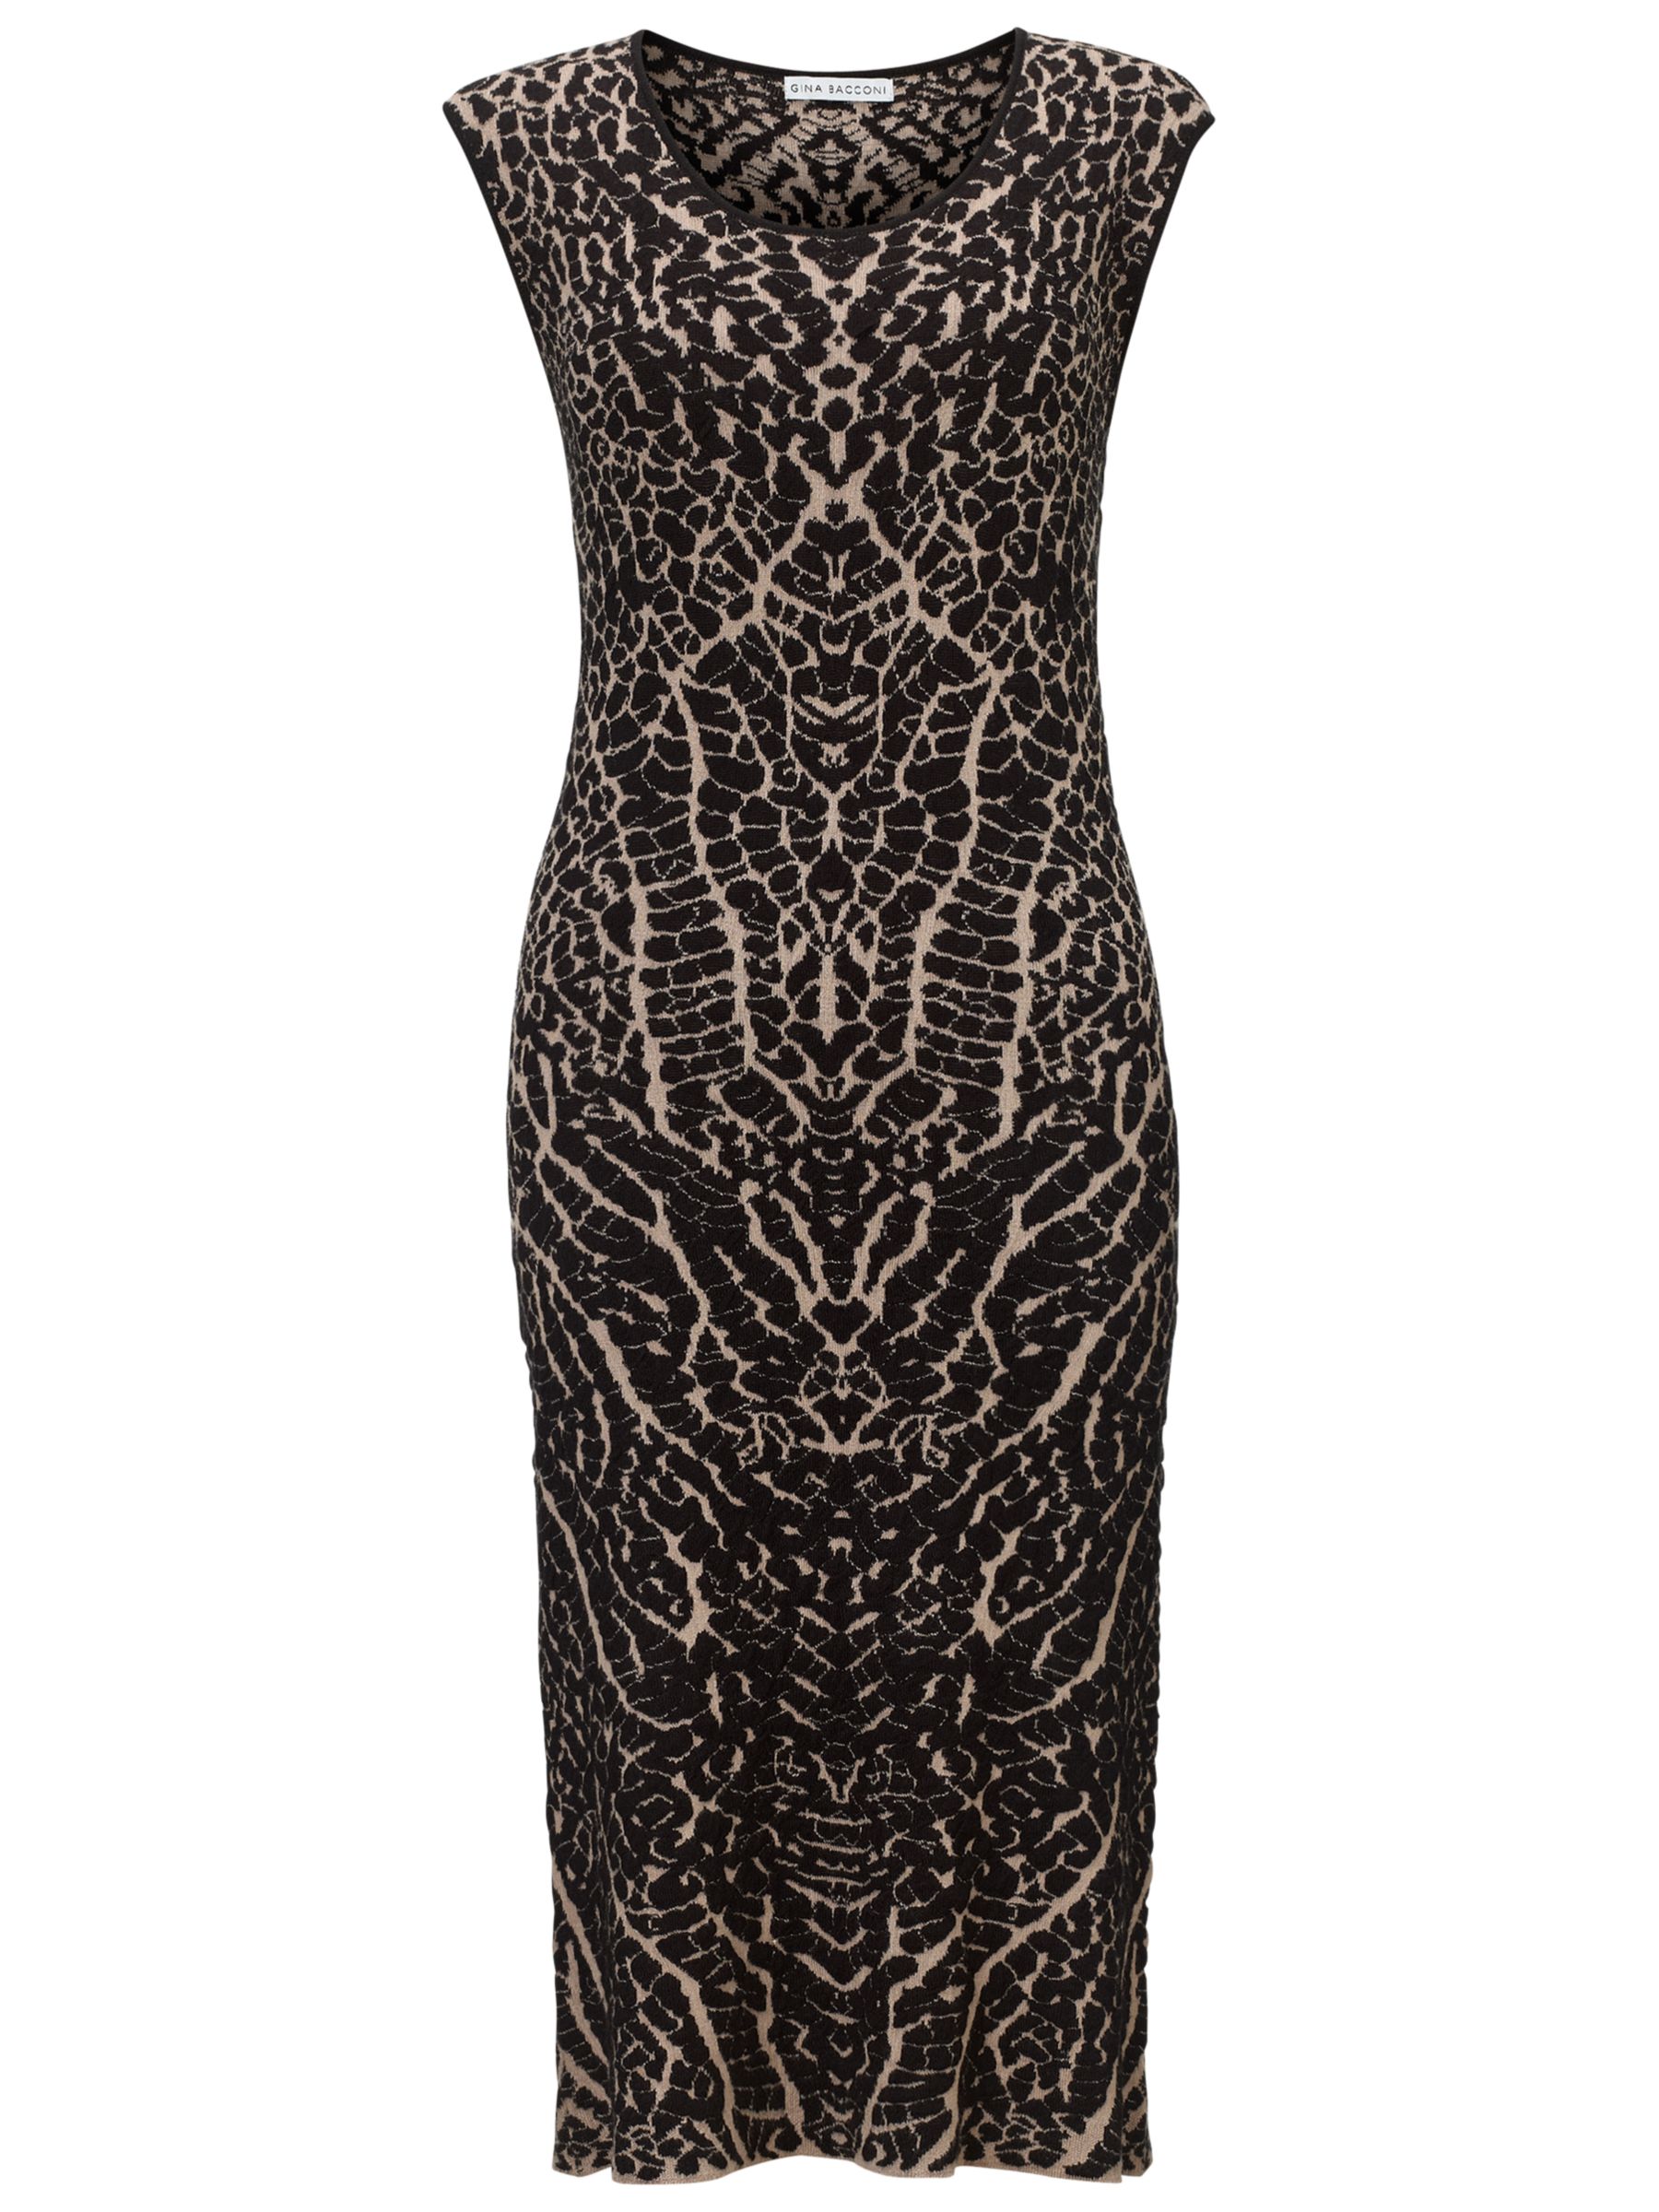 Gina Bacconi Knitted Dress, Black/Beige